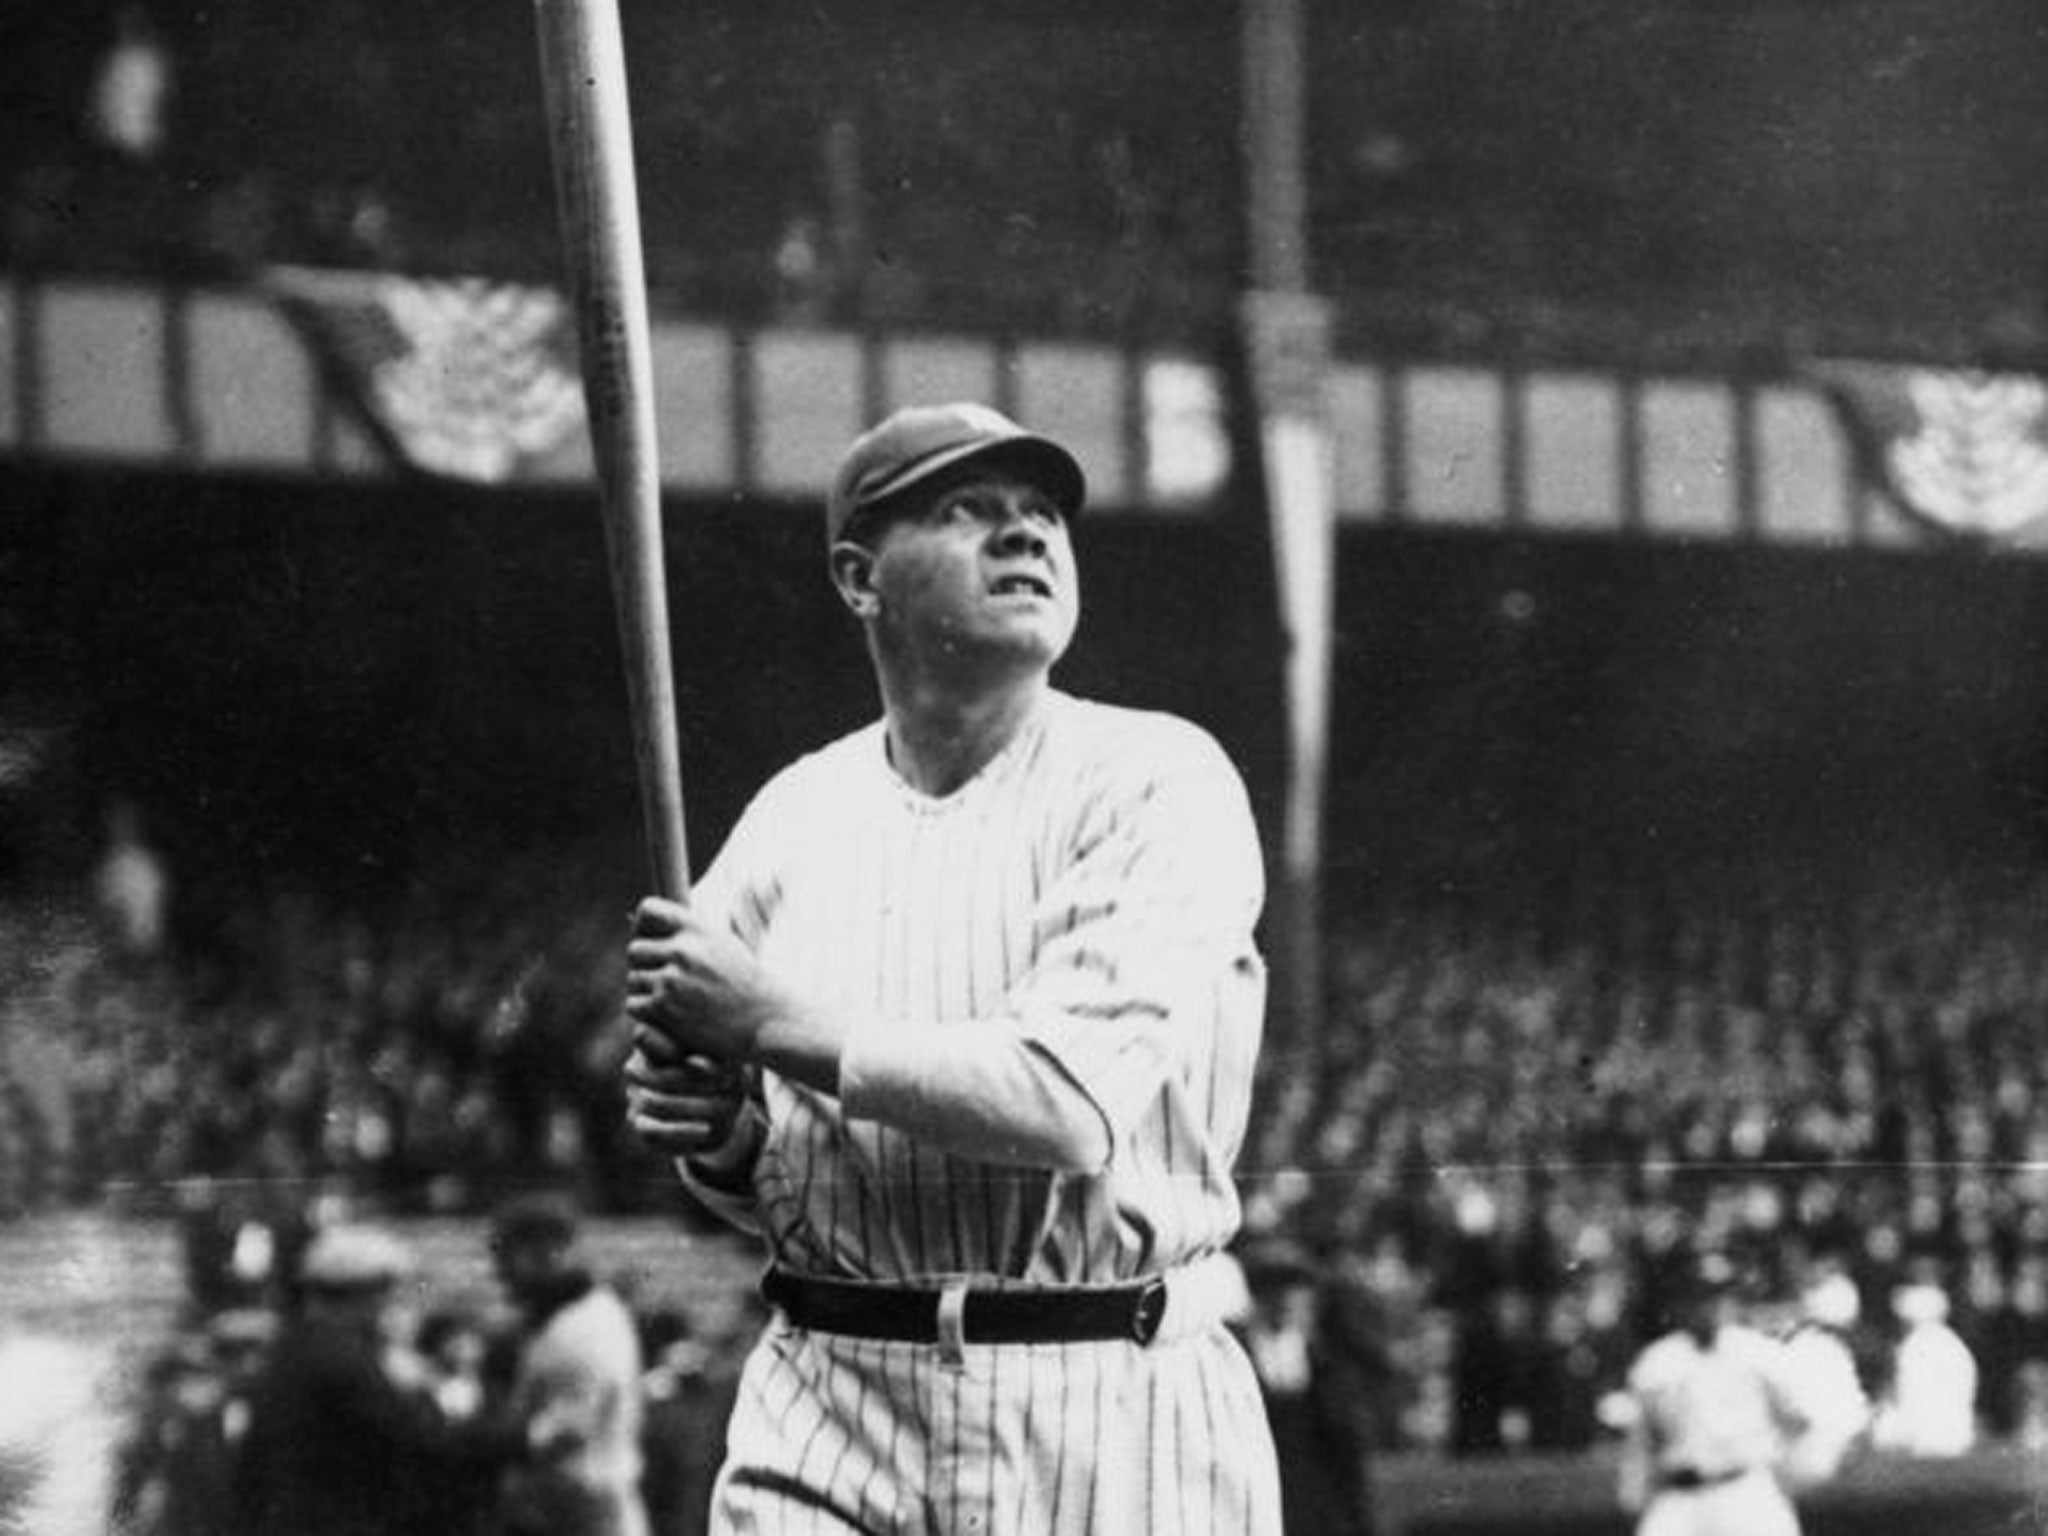 American baseball player 'Babe' Ruth (George Herman Ruth, 1895 - 1948)